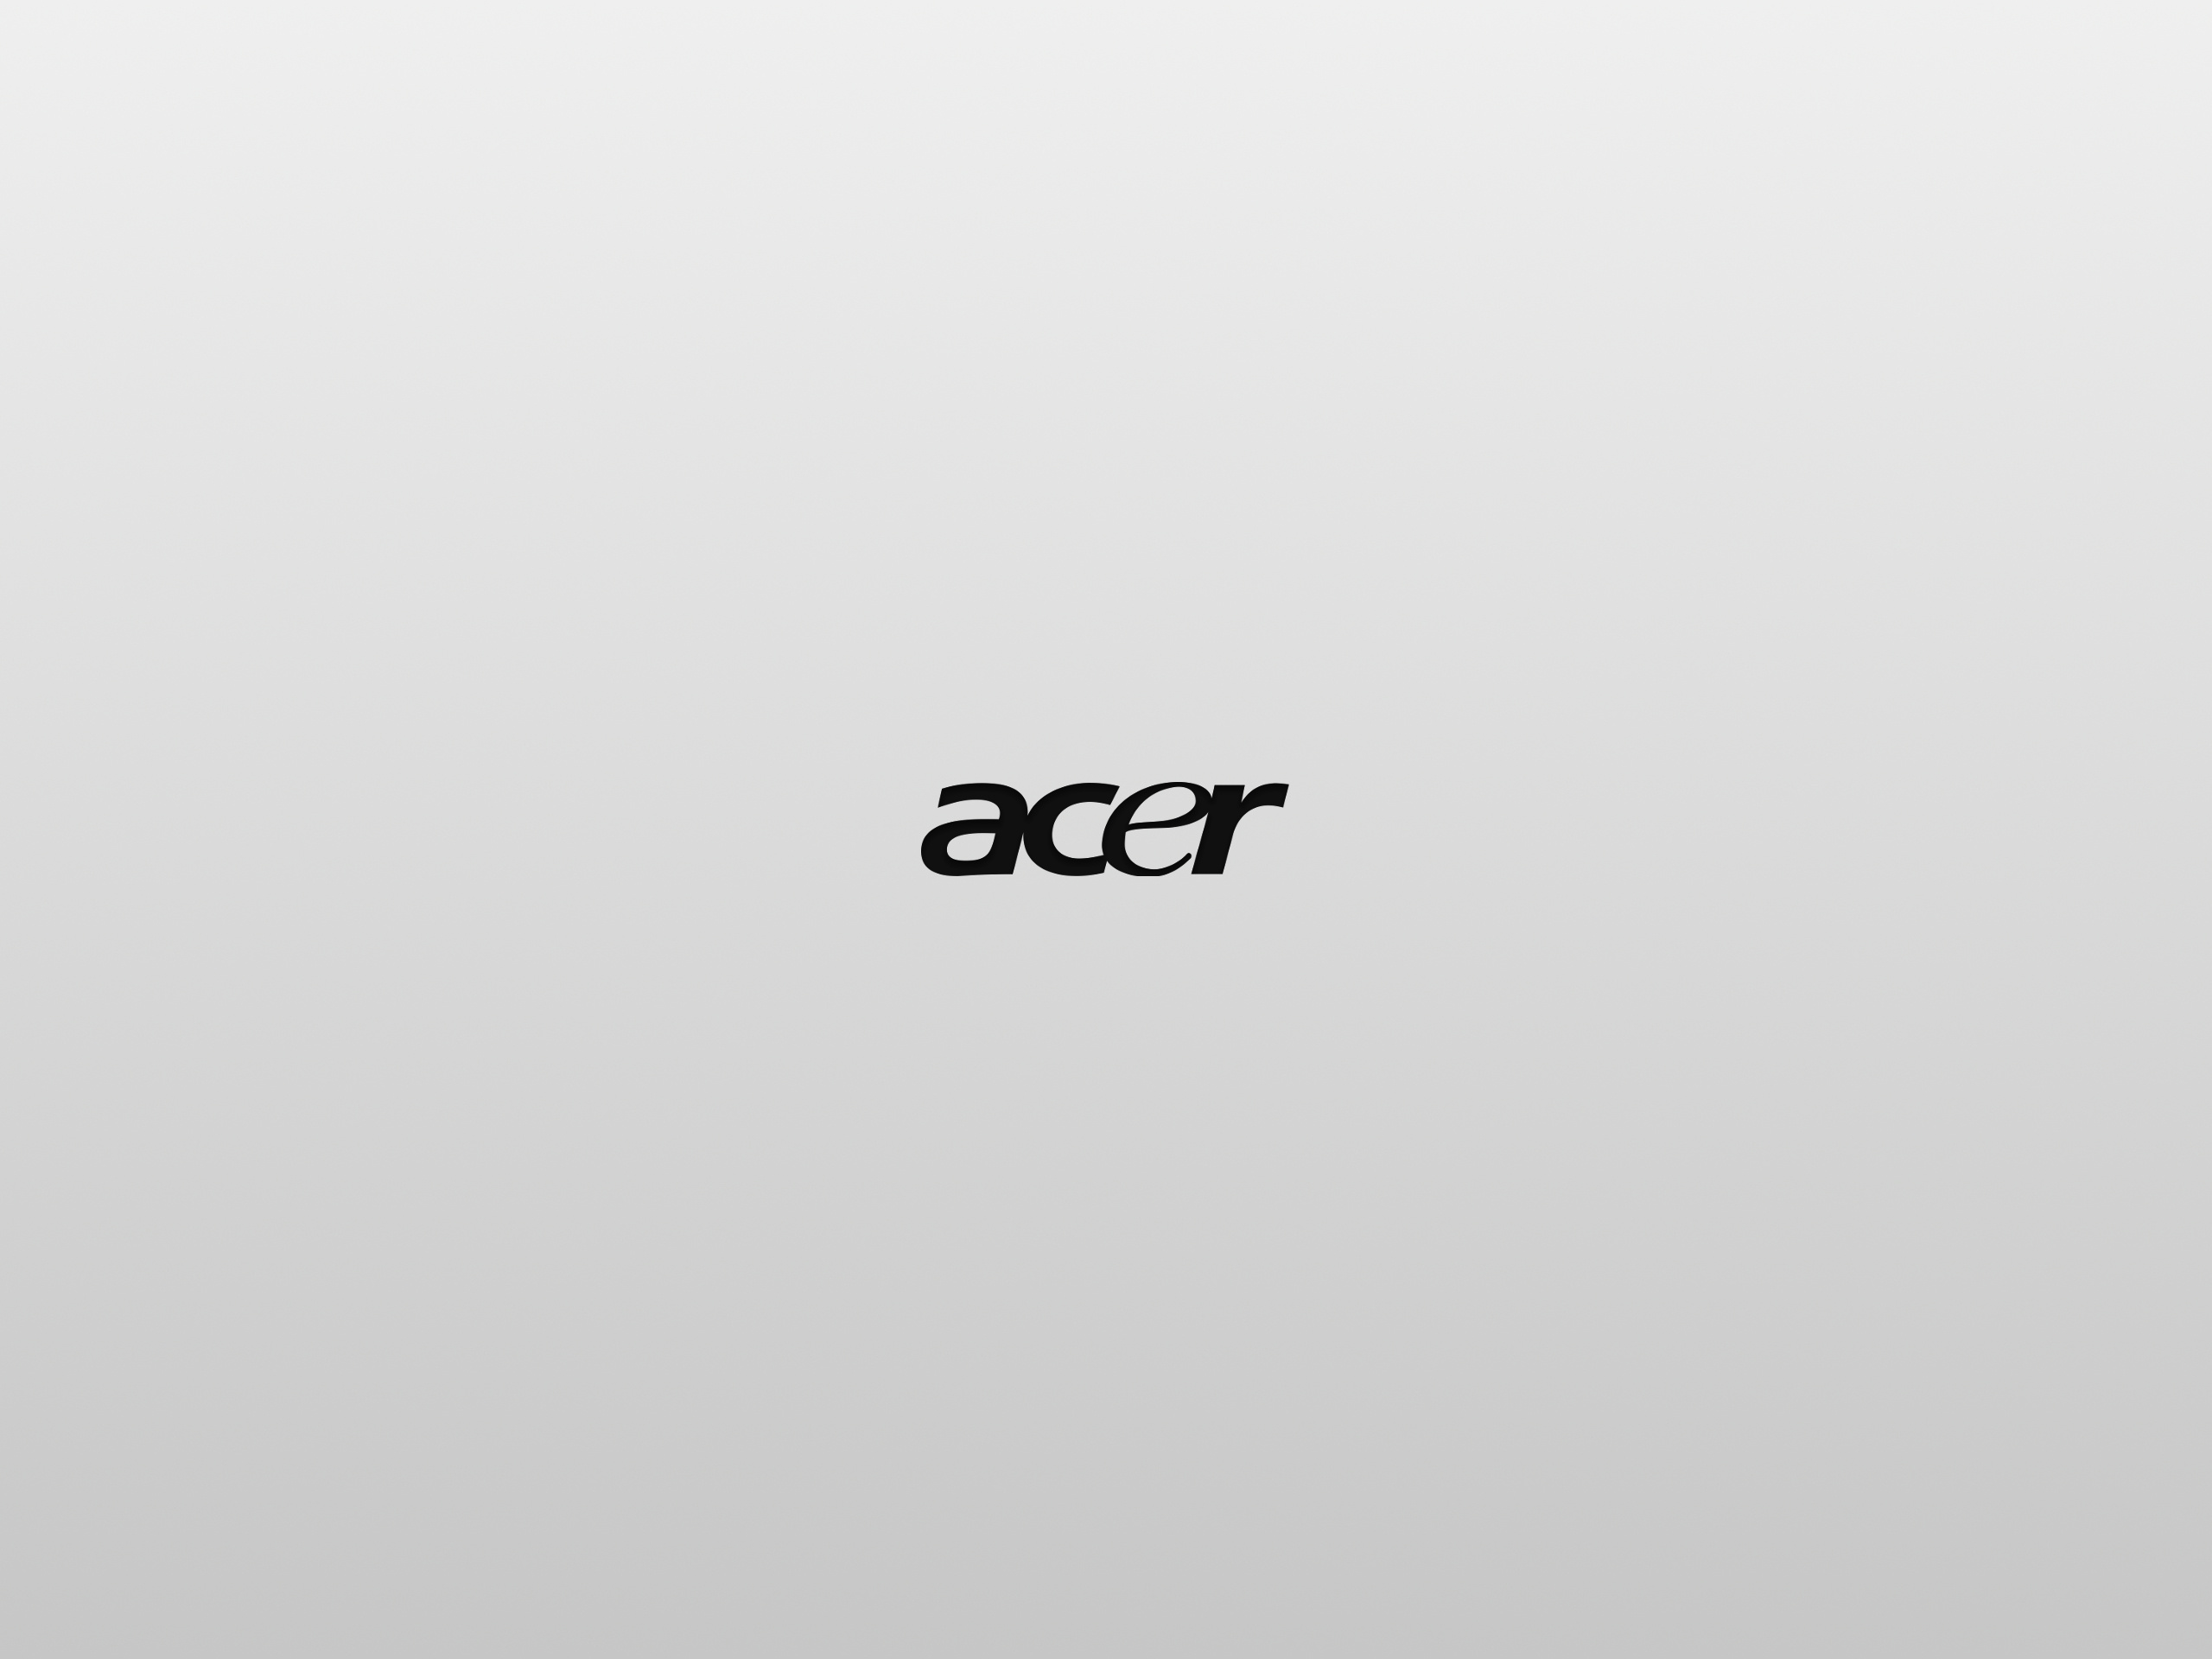 Free Acer background, Acer, 2560x1920 HD Desktop